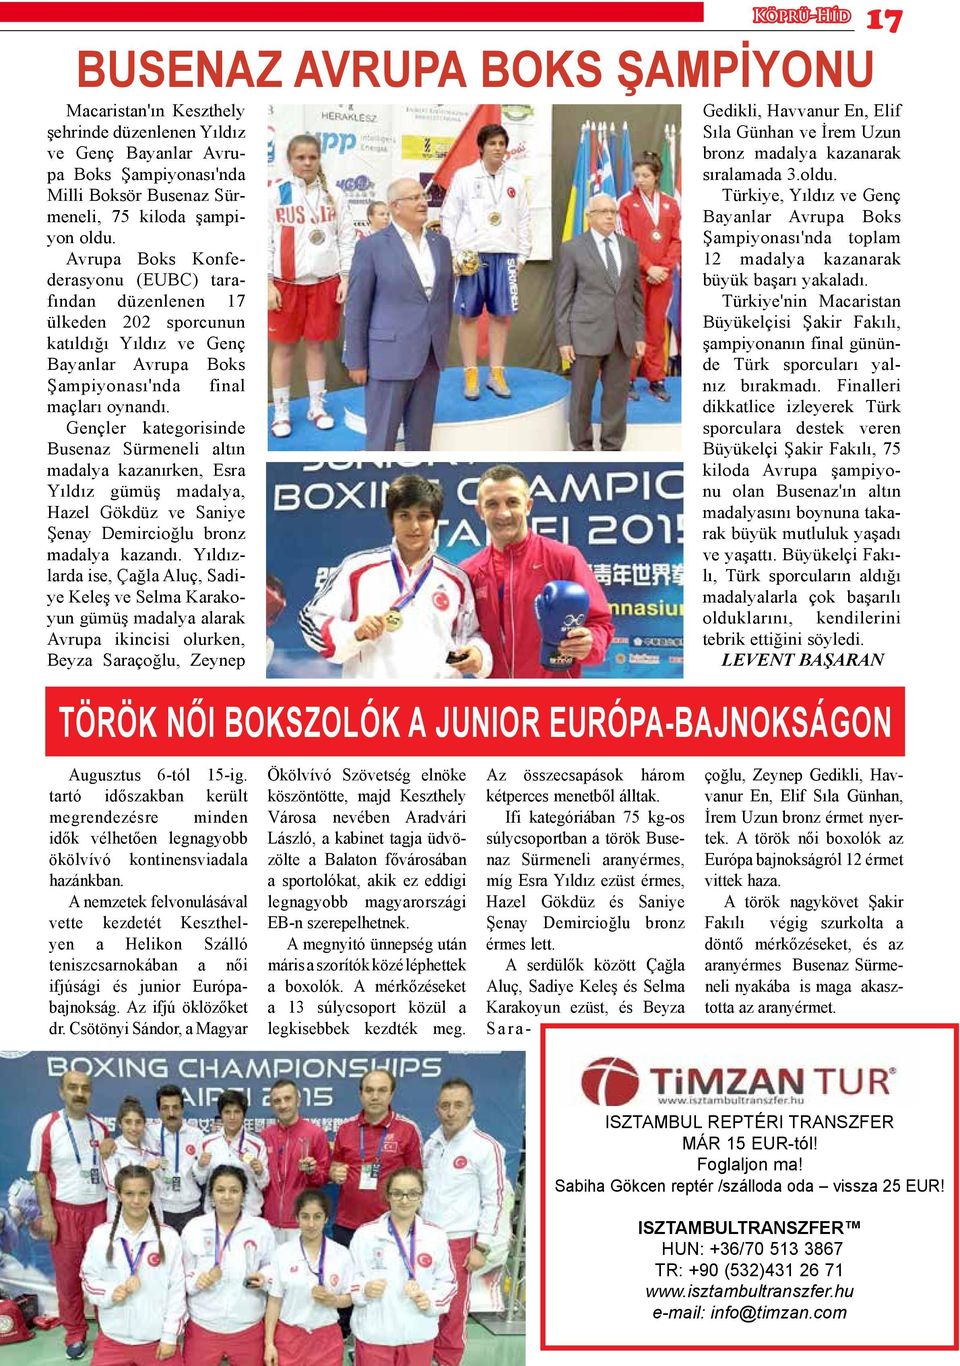 Gençler kategorisinde Busenaz Sürmeneli altın madalya kazanırken, Esra Yıldız gümüş madalya, Hazel Gökdüz ve Saniye Şenay Demircioğlu bronz madalya kazandı.